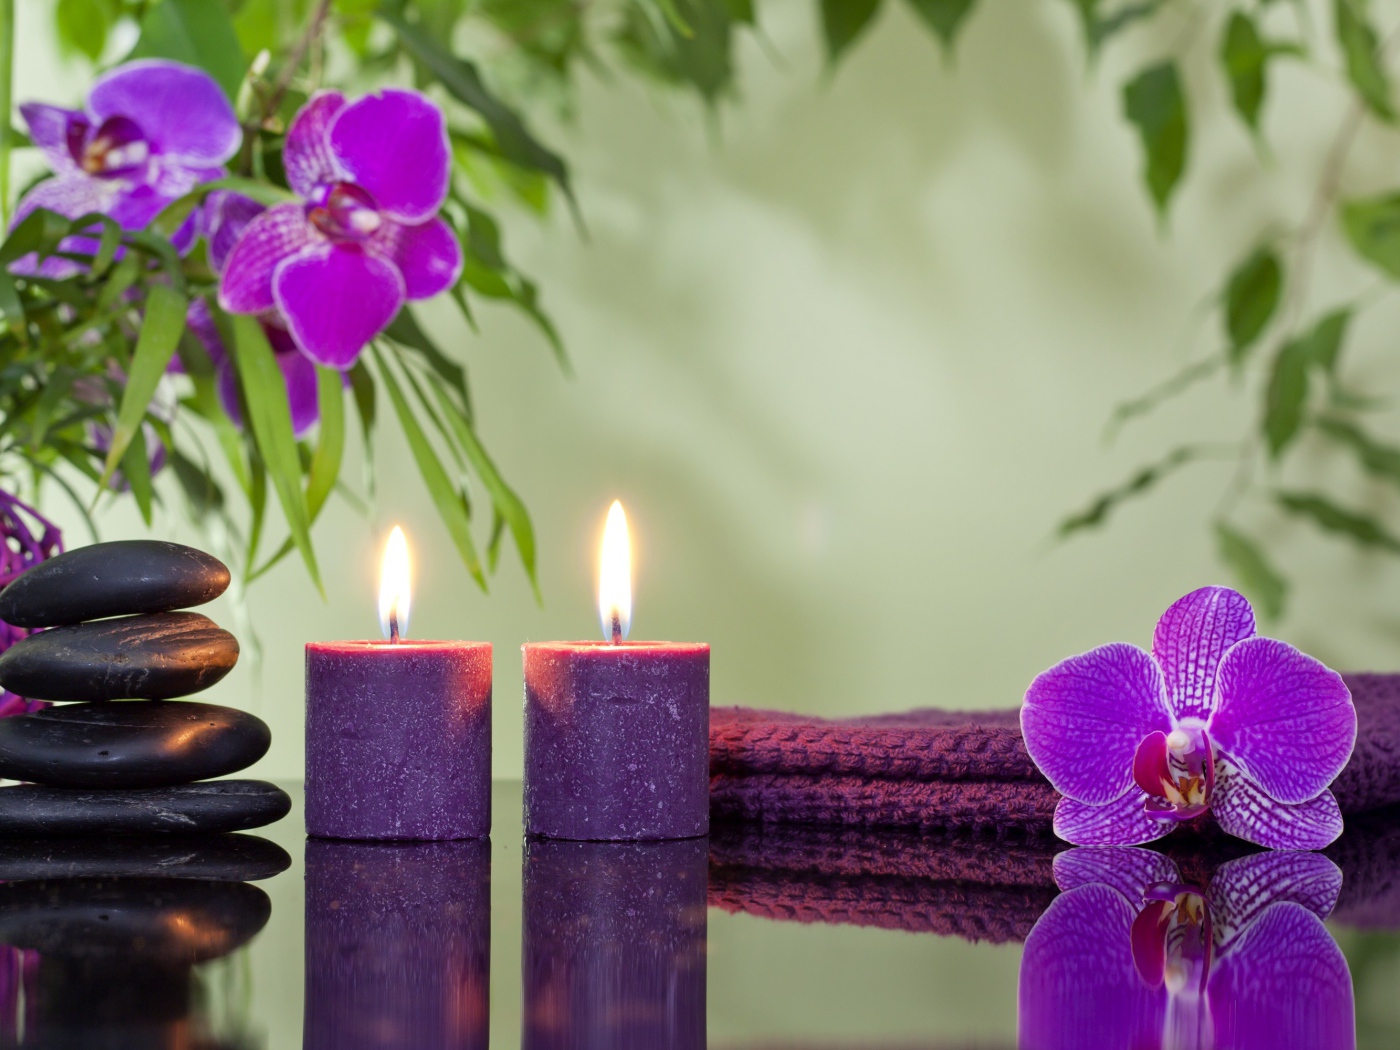 Две горящие свечи с камнями и цветами орхидеи отражаются в зеркальной поверхности стола